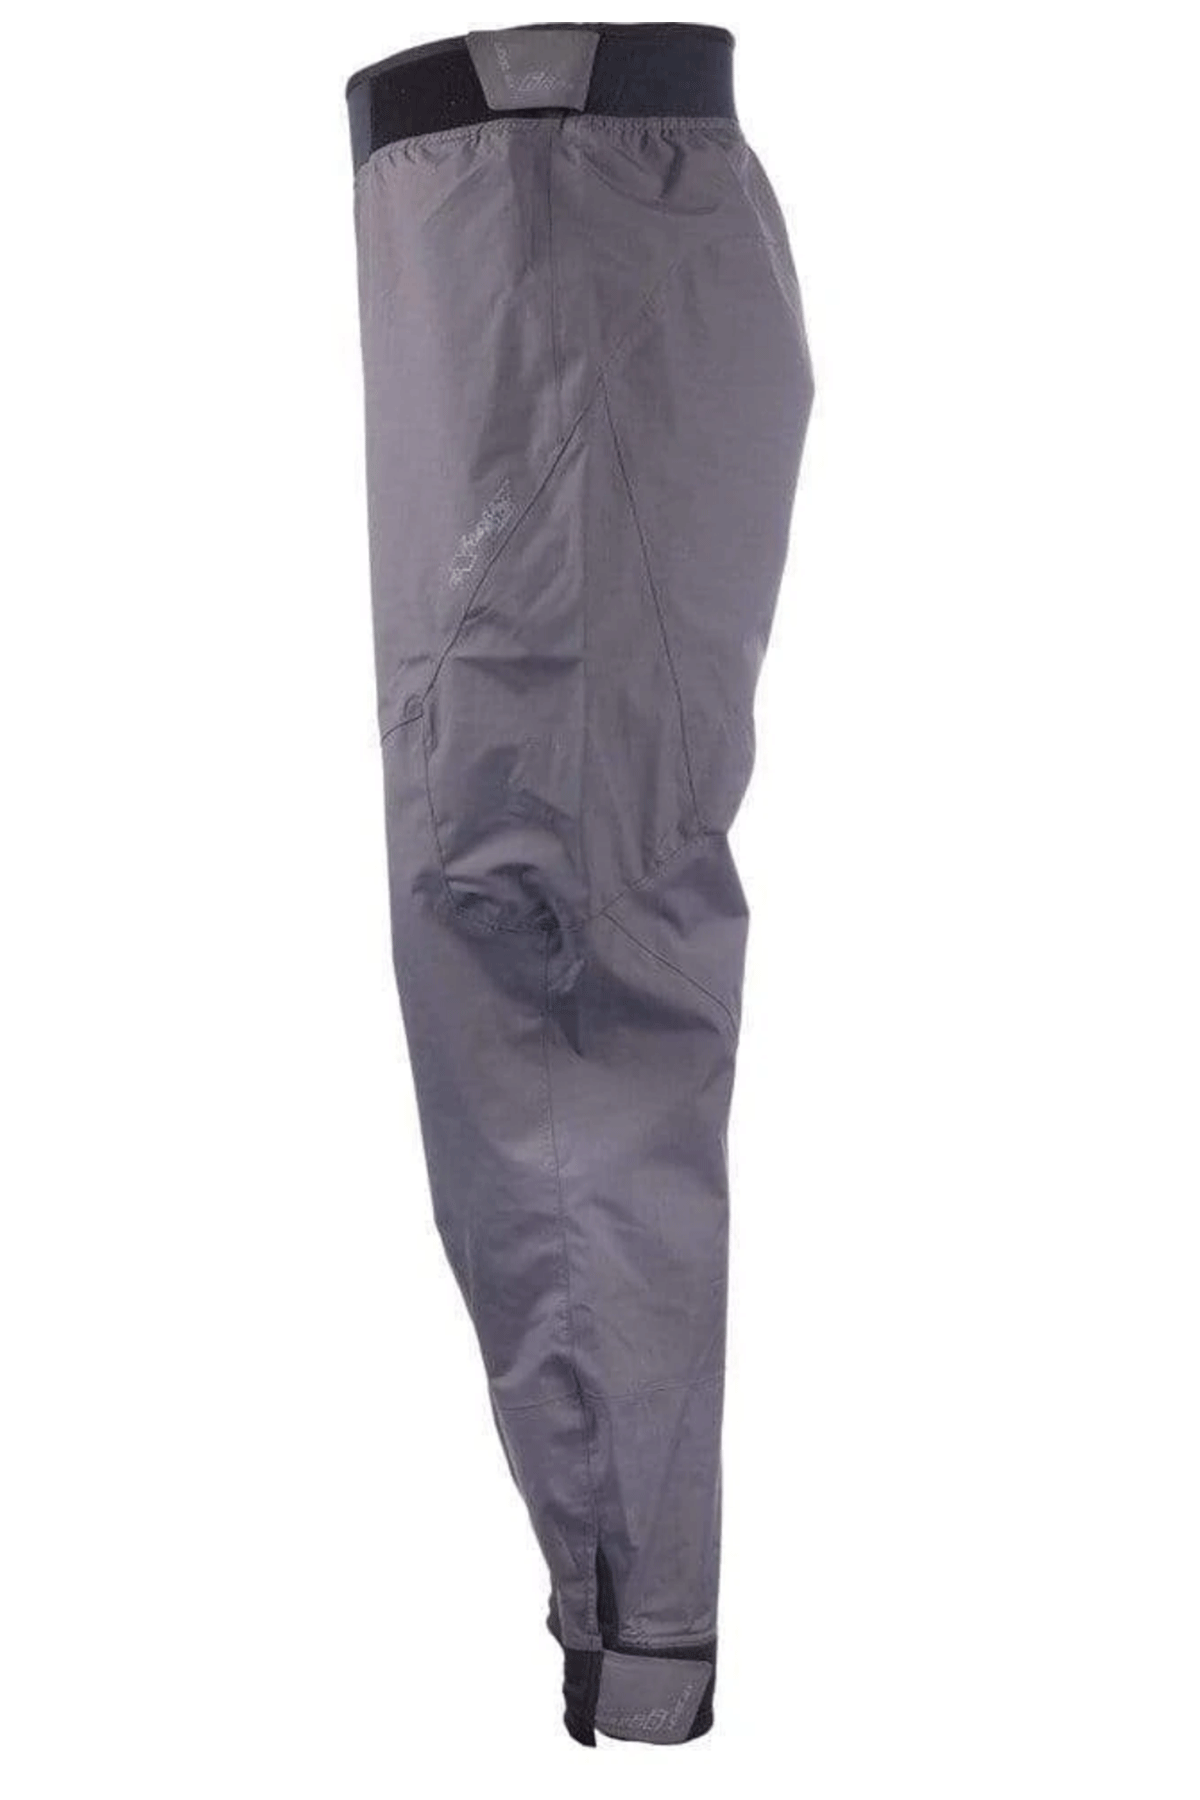 Level Six Charcoal Paddling Semi Dry Pant Left Side View